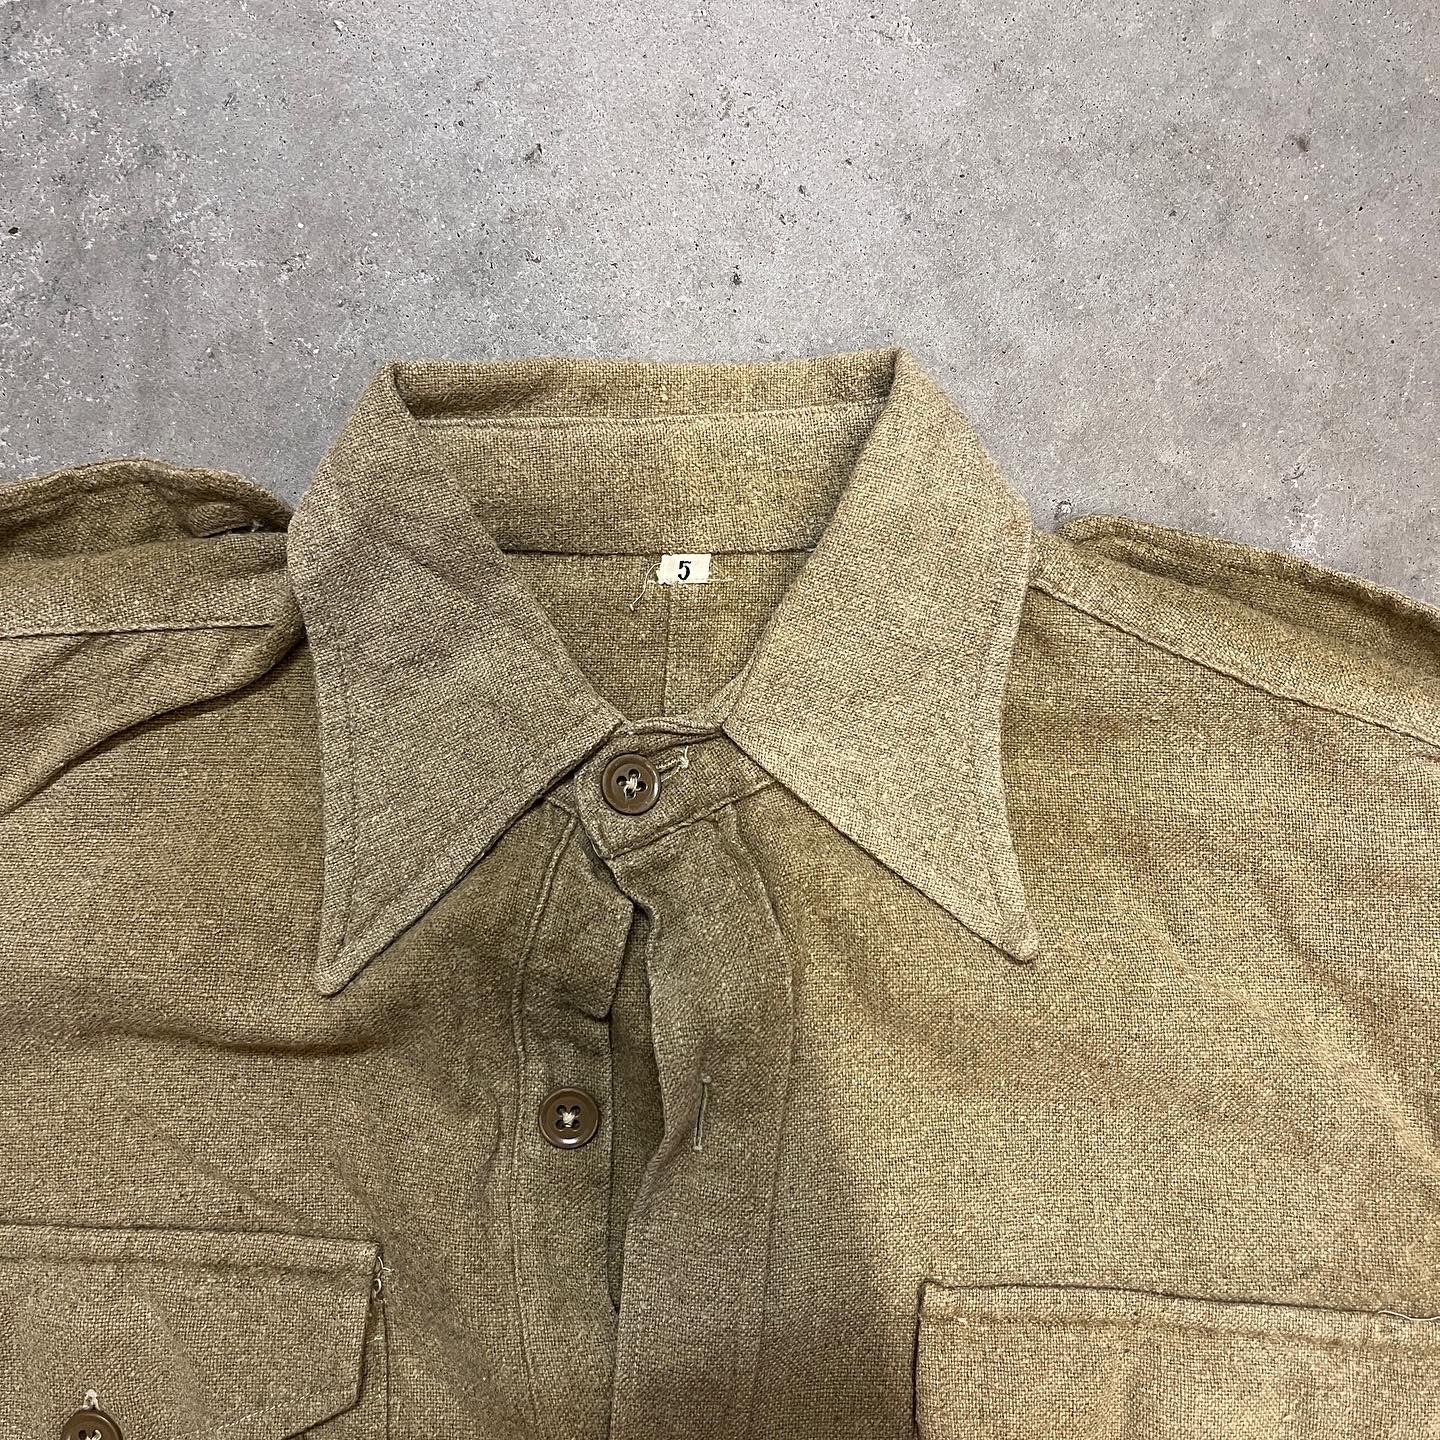 WW2 British Army Woolen Shirt